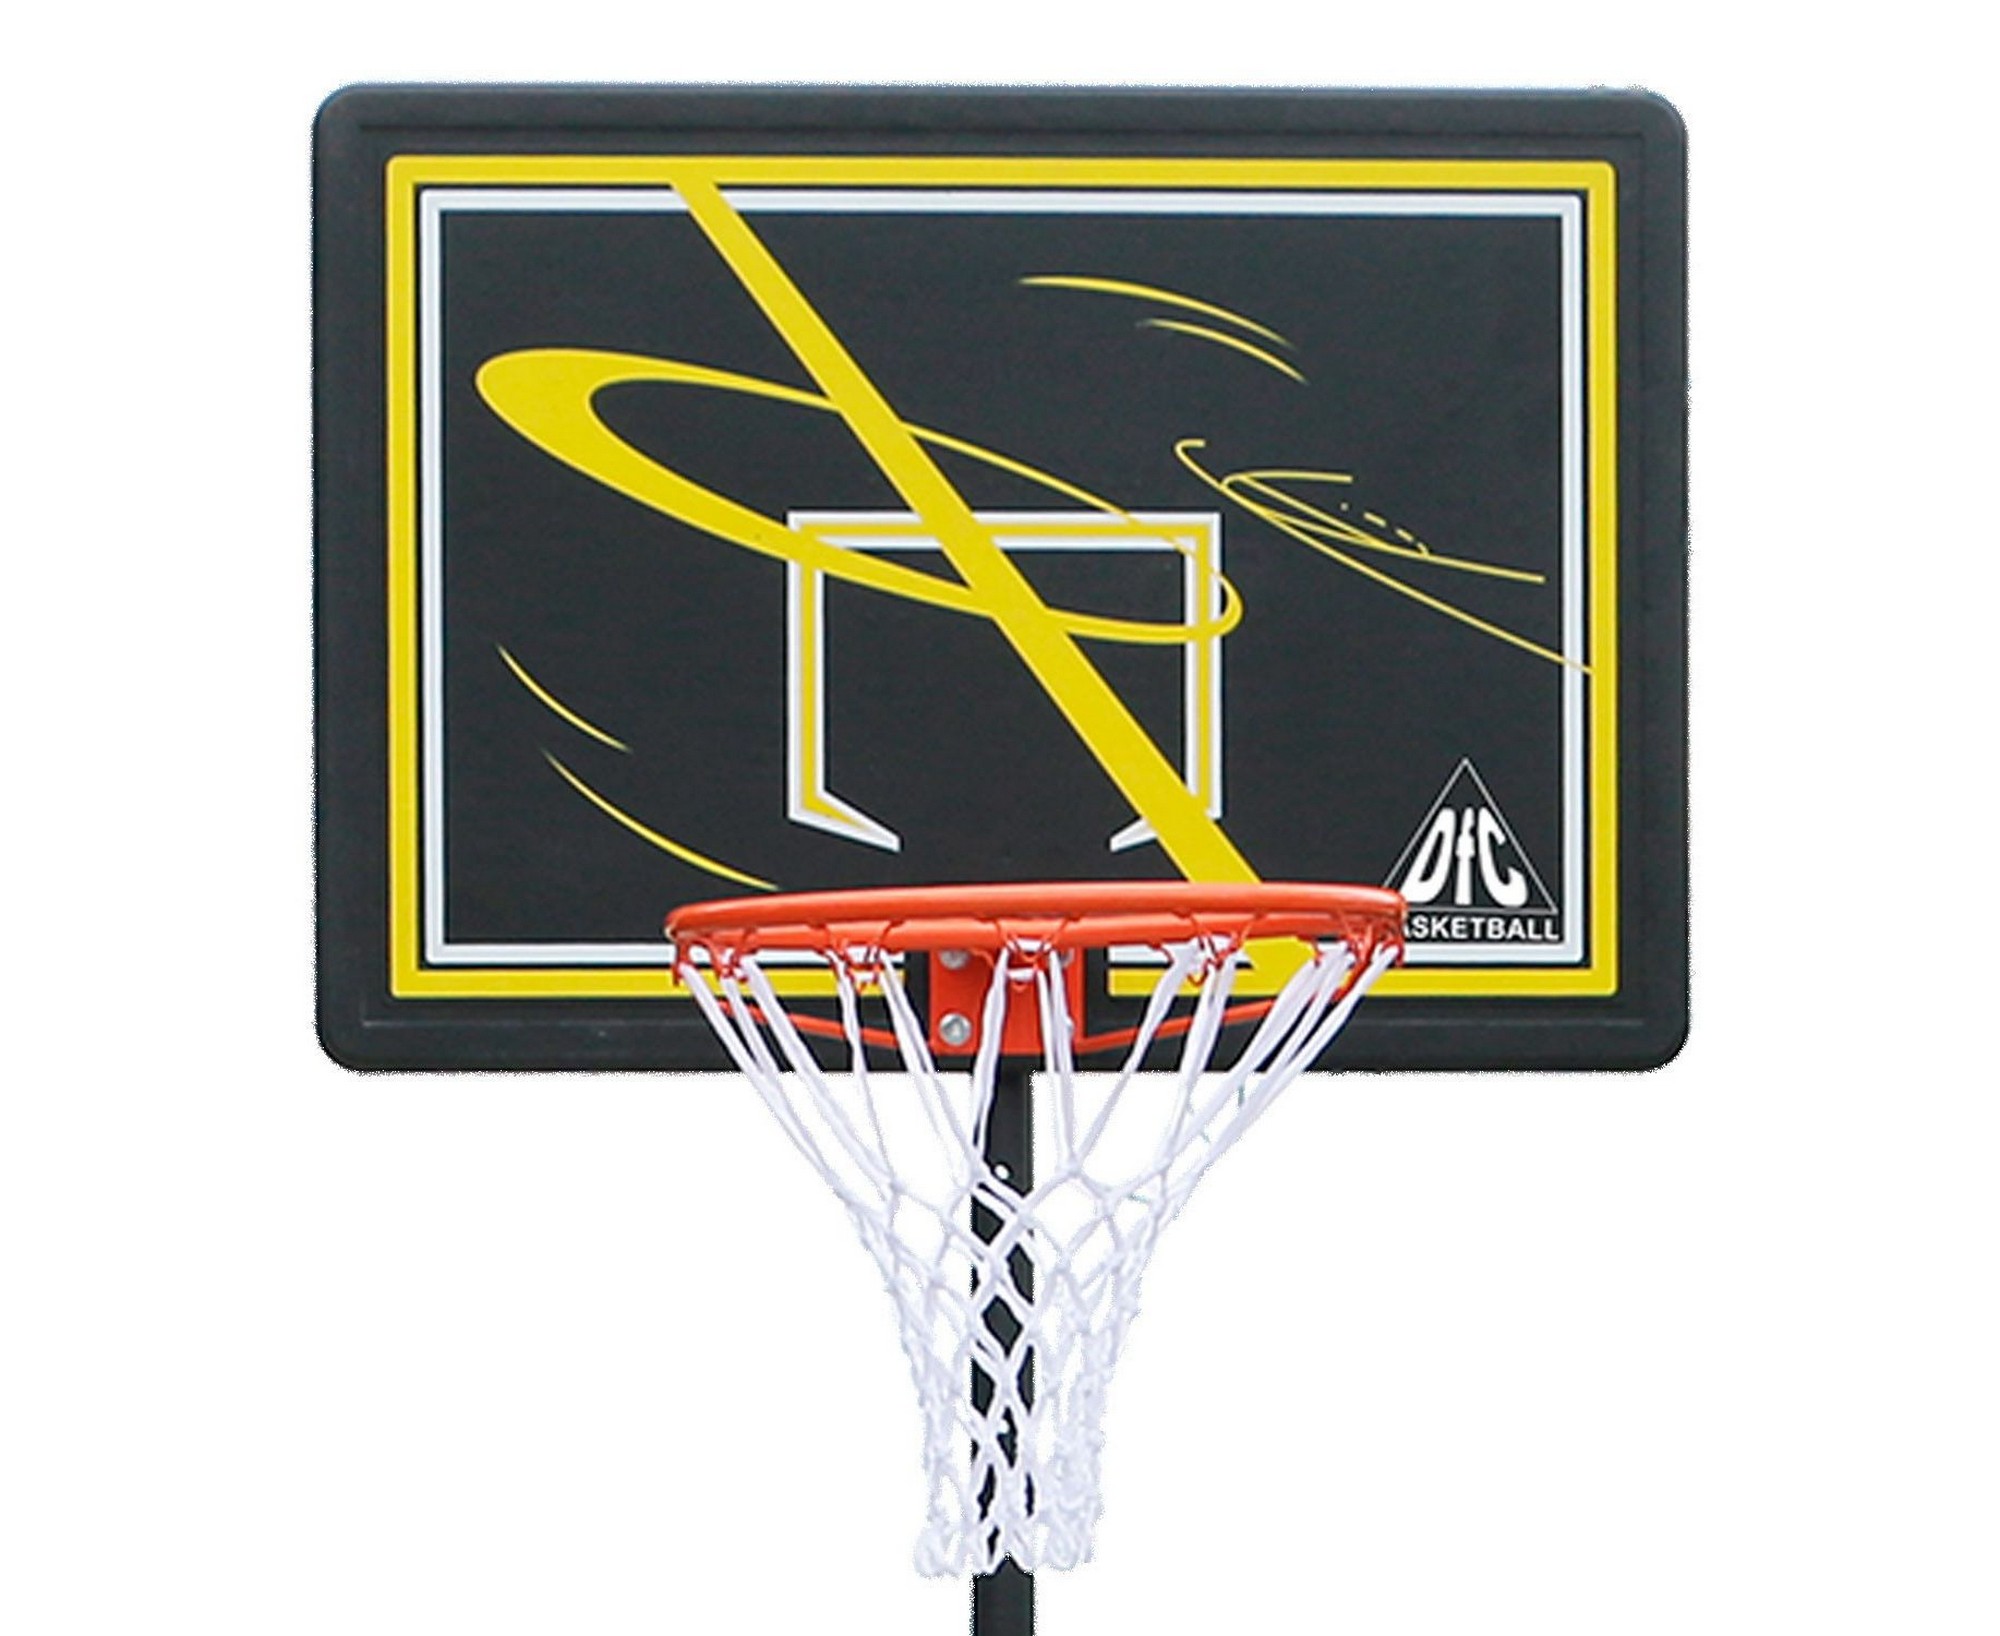 Мобильная баскетбольная стойка DFC KIDSF 2000_1636